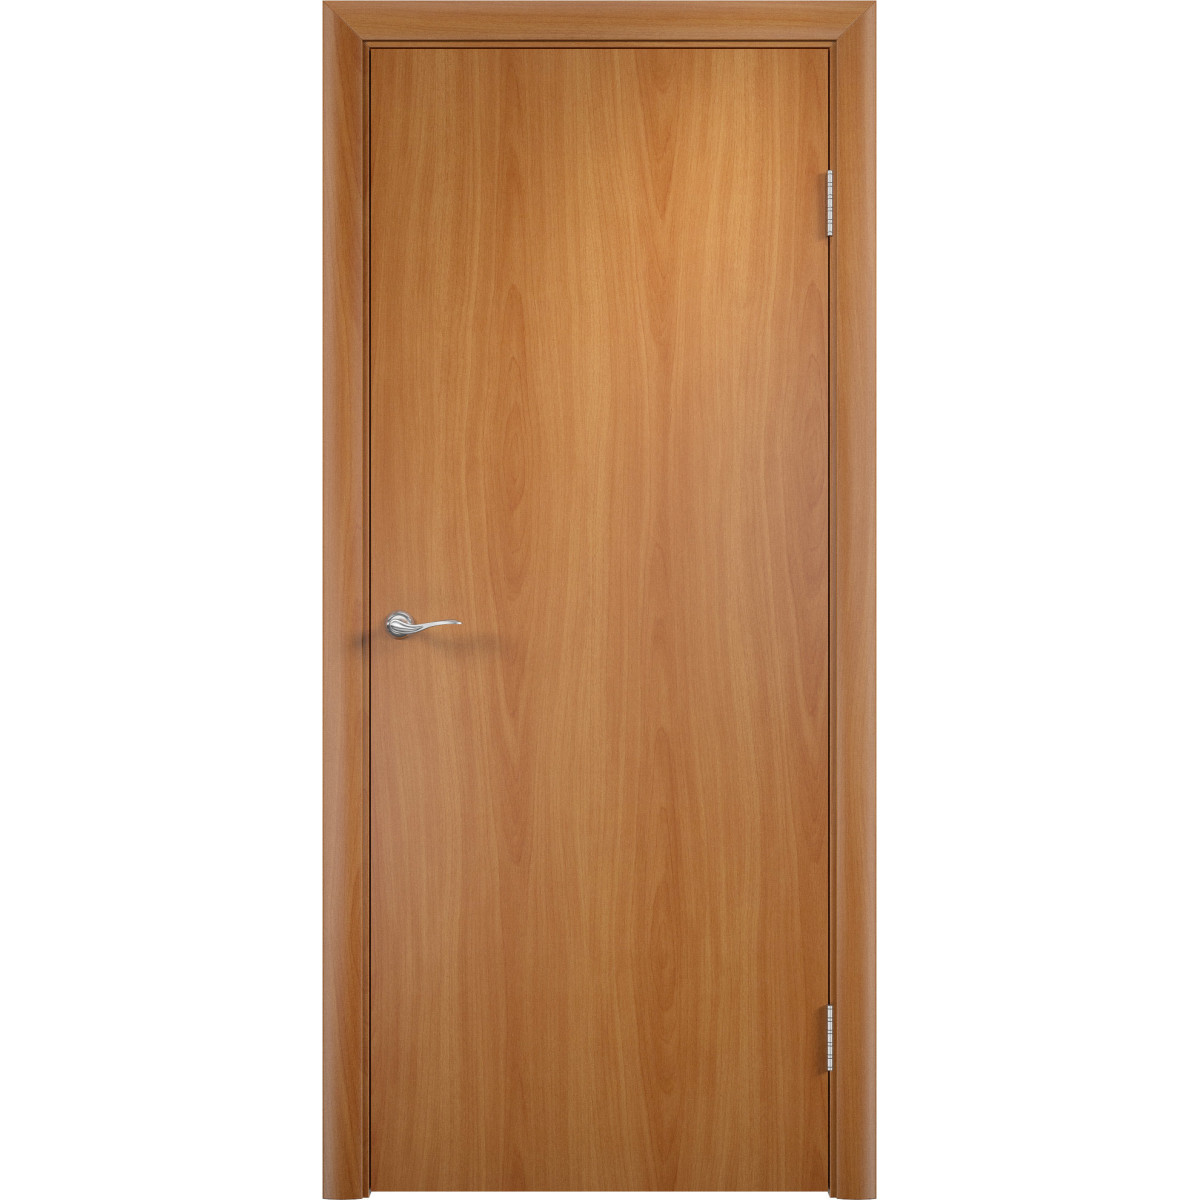 Дверь межкомнатная глухая 70x200 см, ламинация, цвет миланский орех